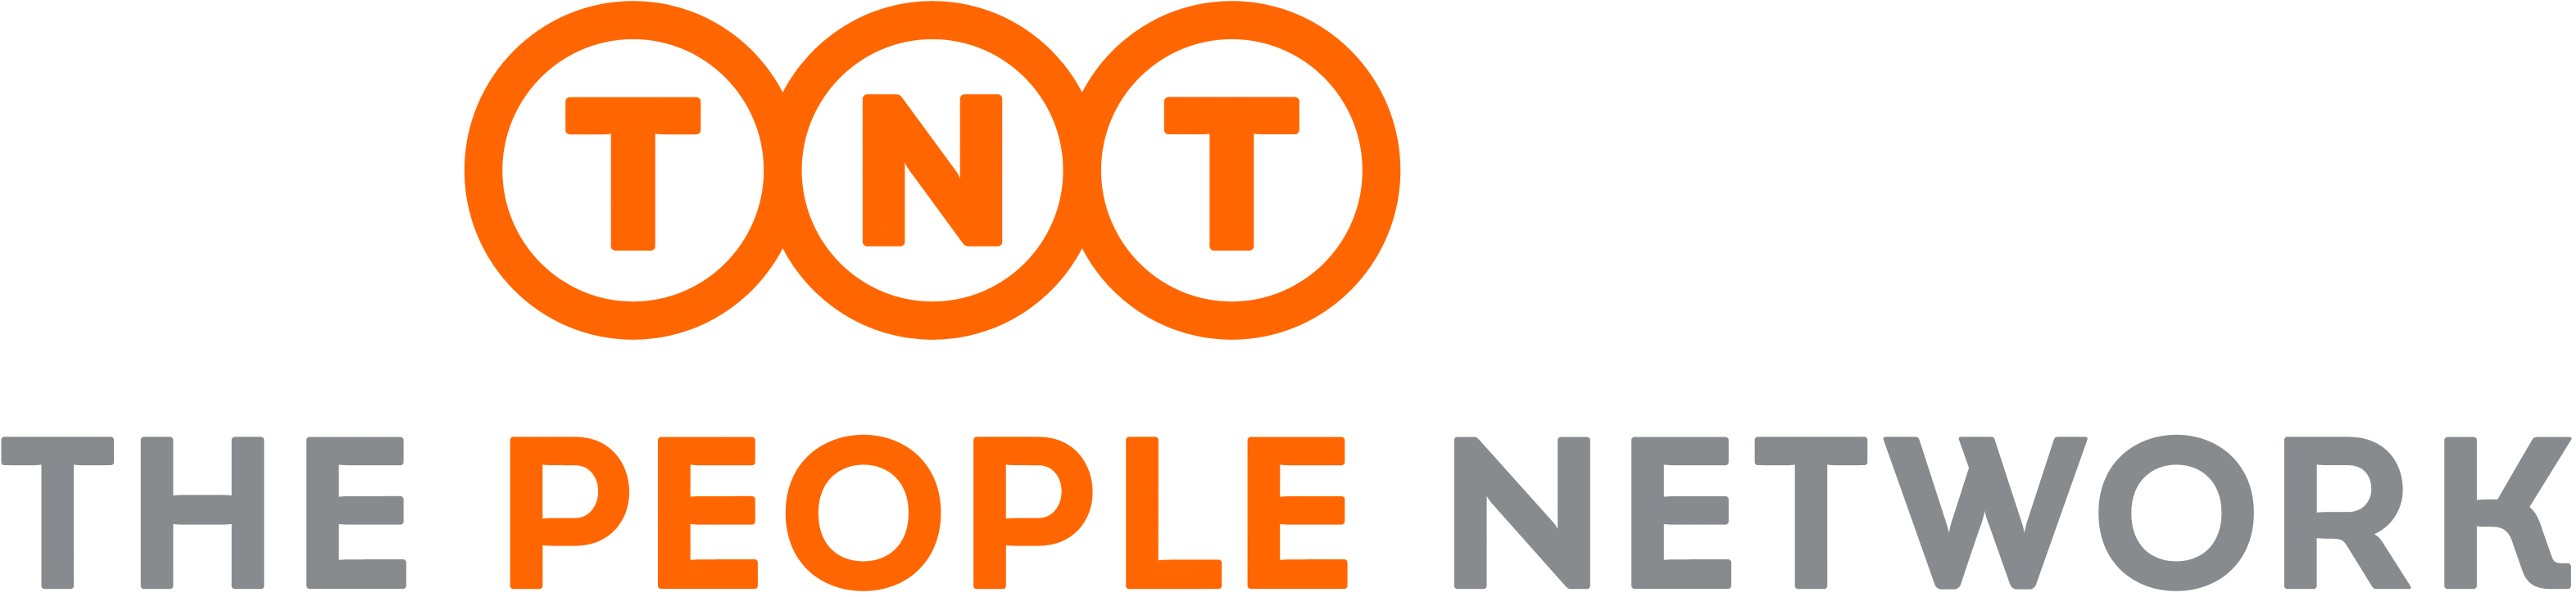 TNTエクスプレス株式会社